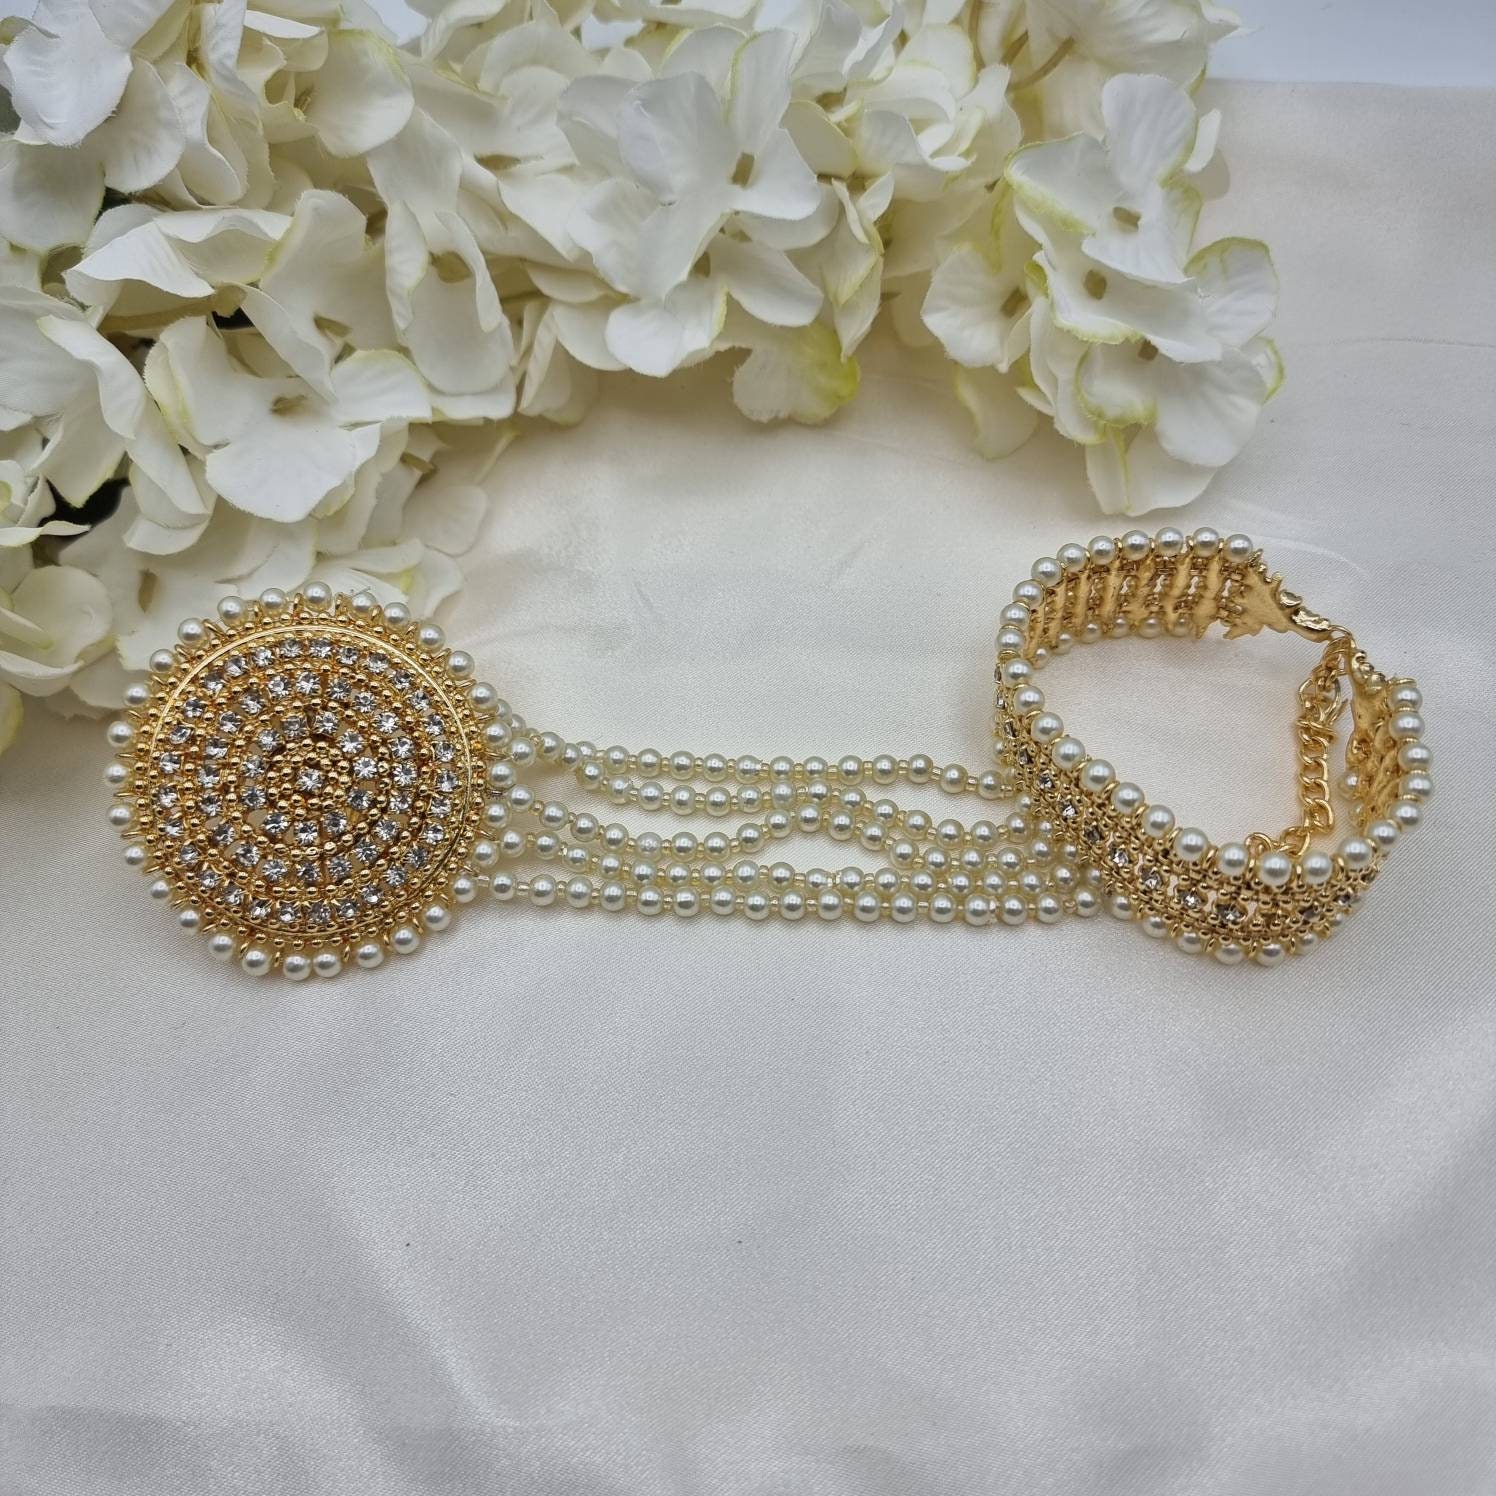 Hathphool Cadena de mano de perla de oro antigua joyería india pakistaní Joyería Pulseras Cadenas para las manos pieza de mano 